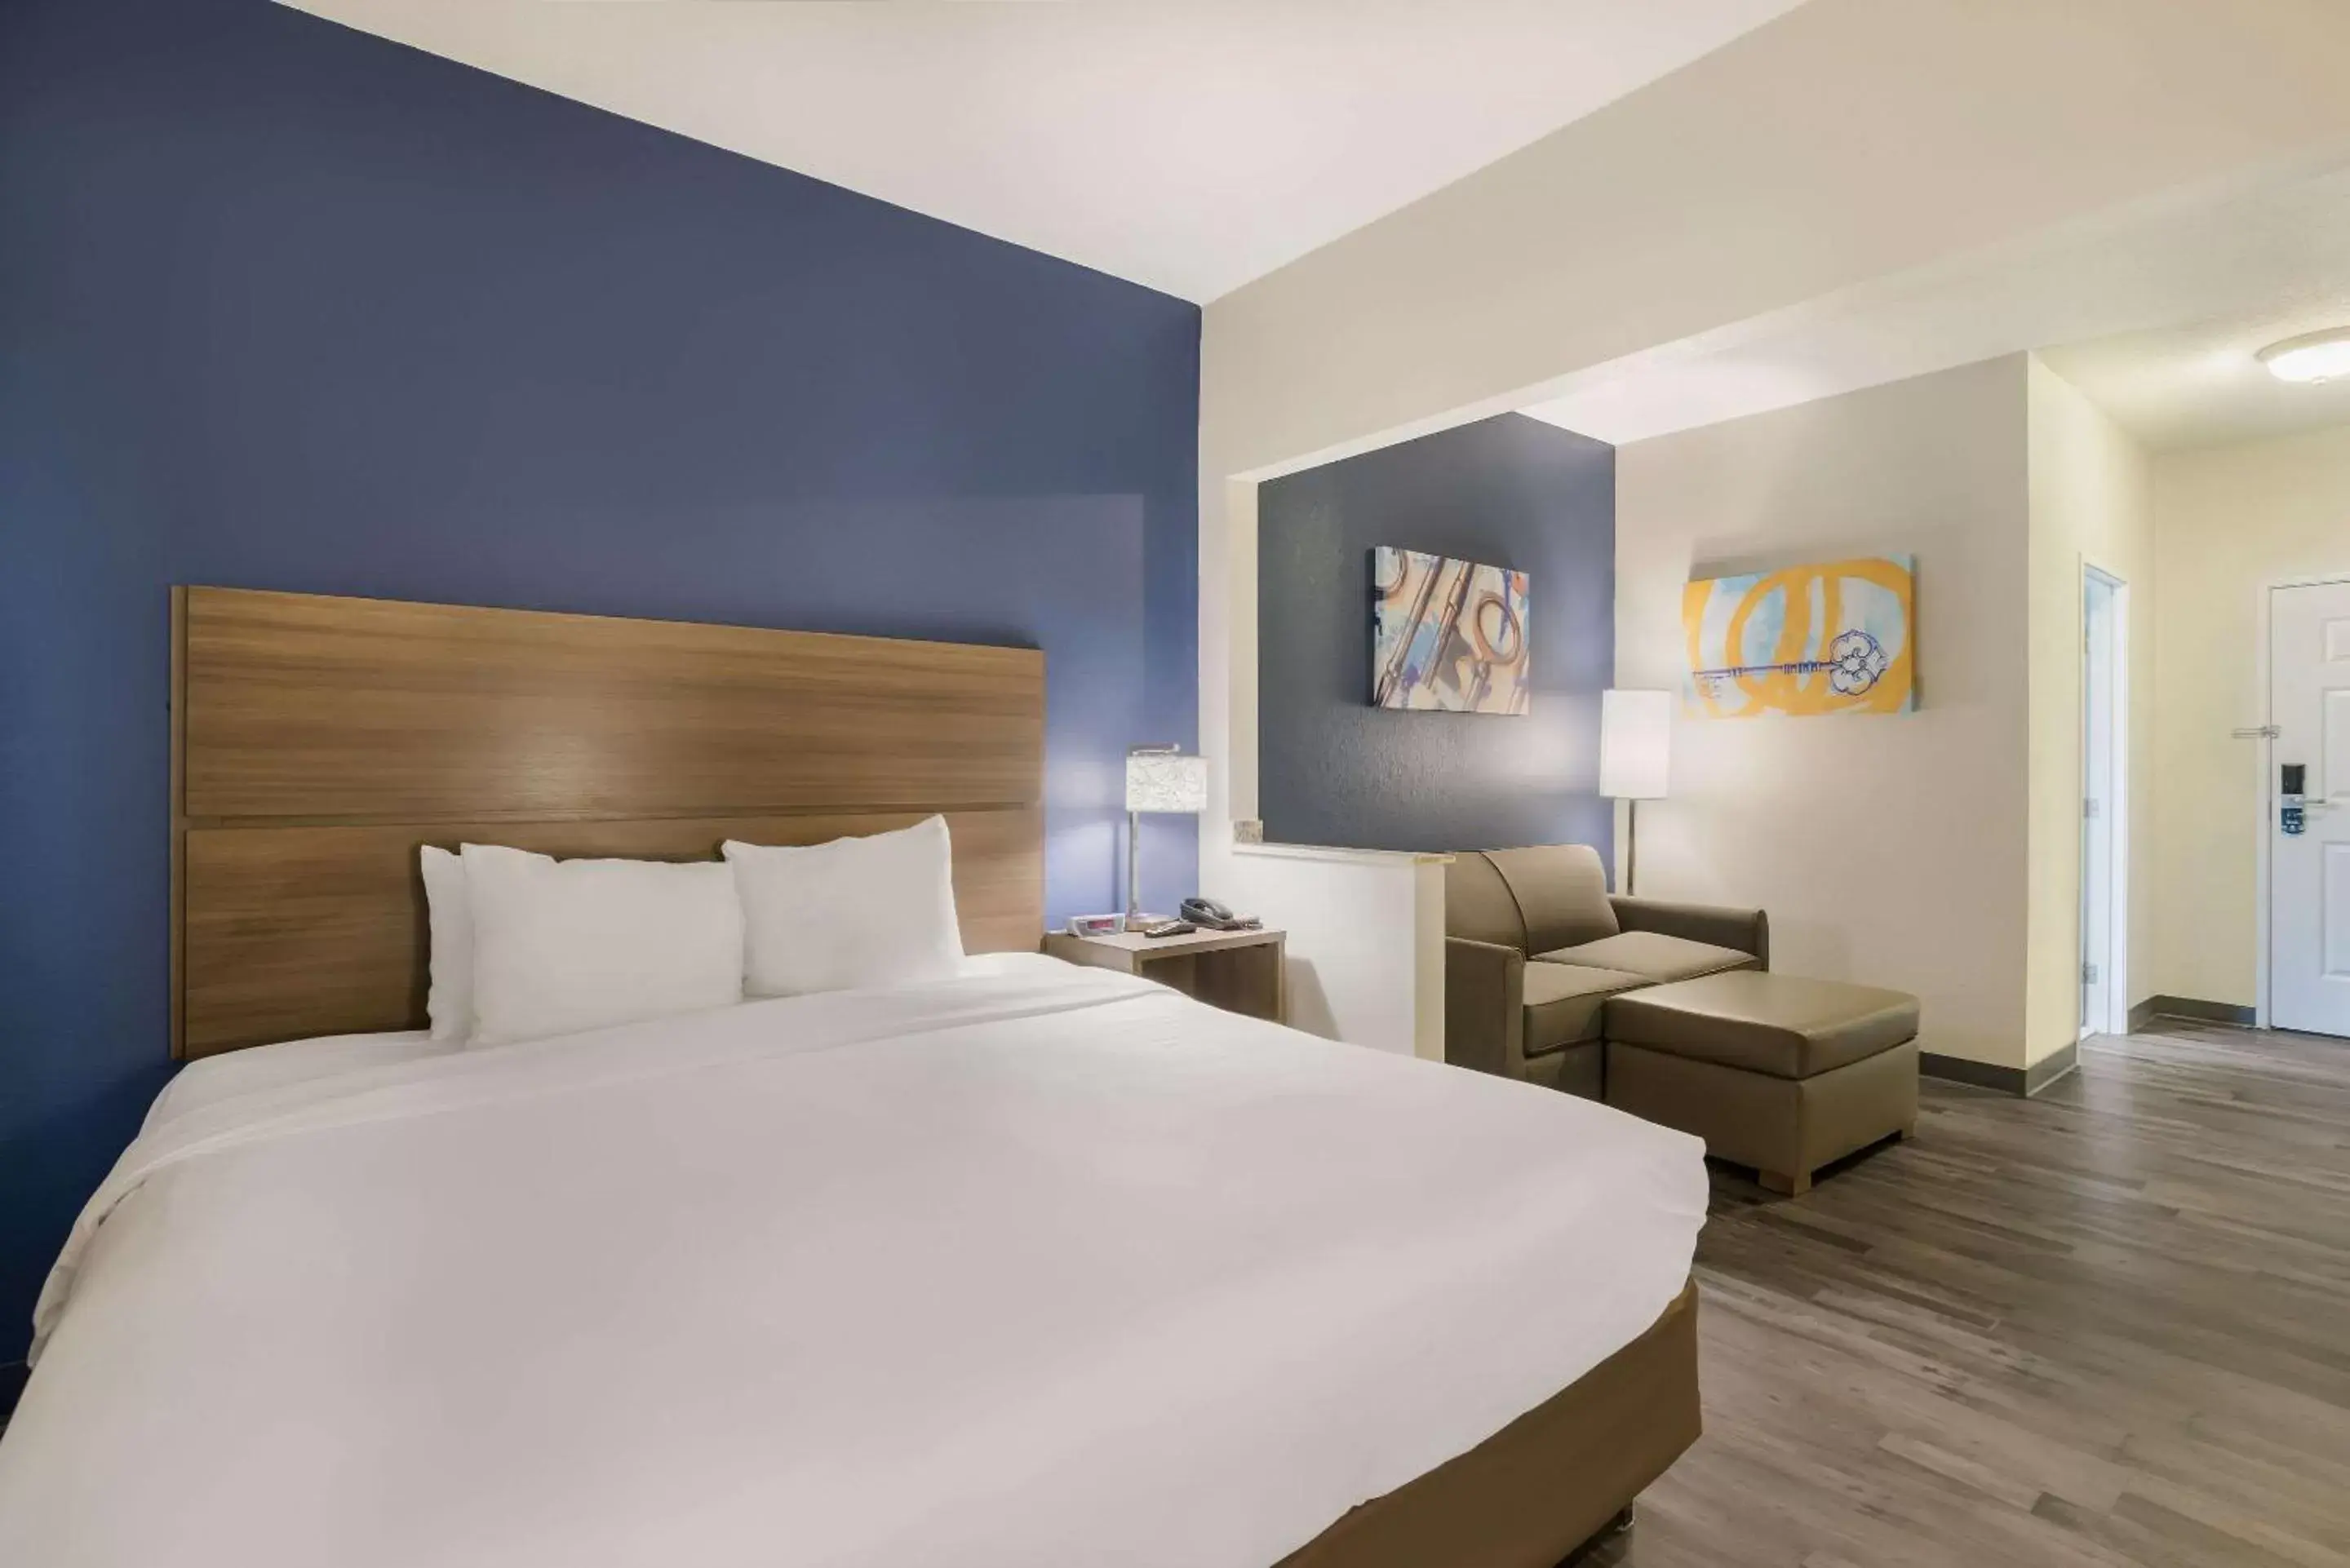 Bedroom, Bed in MainStay Suites Joliet I-55